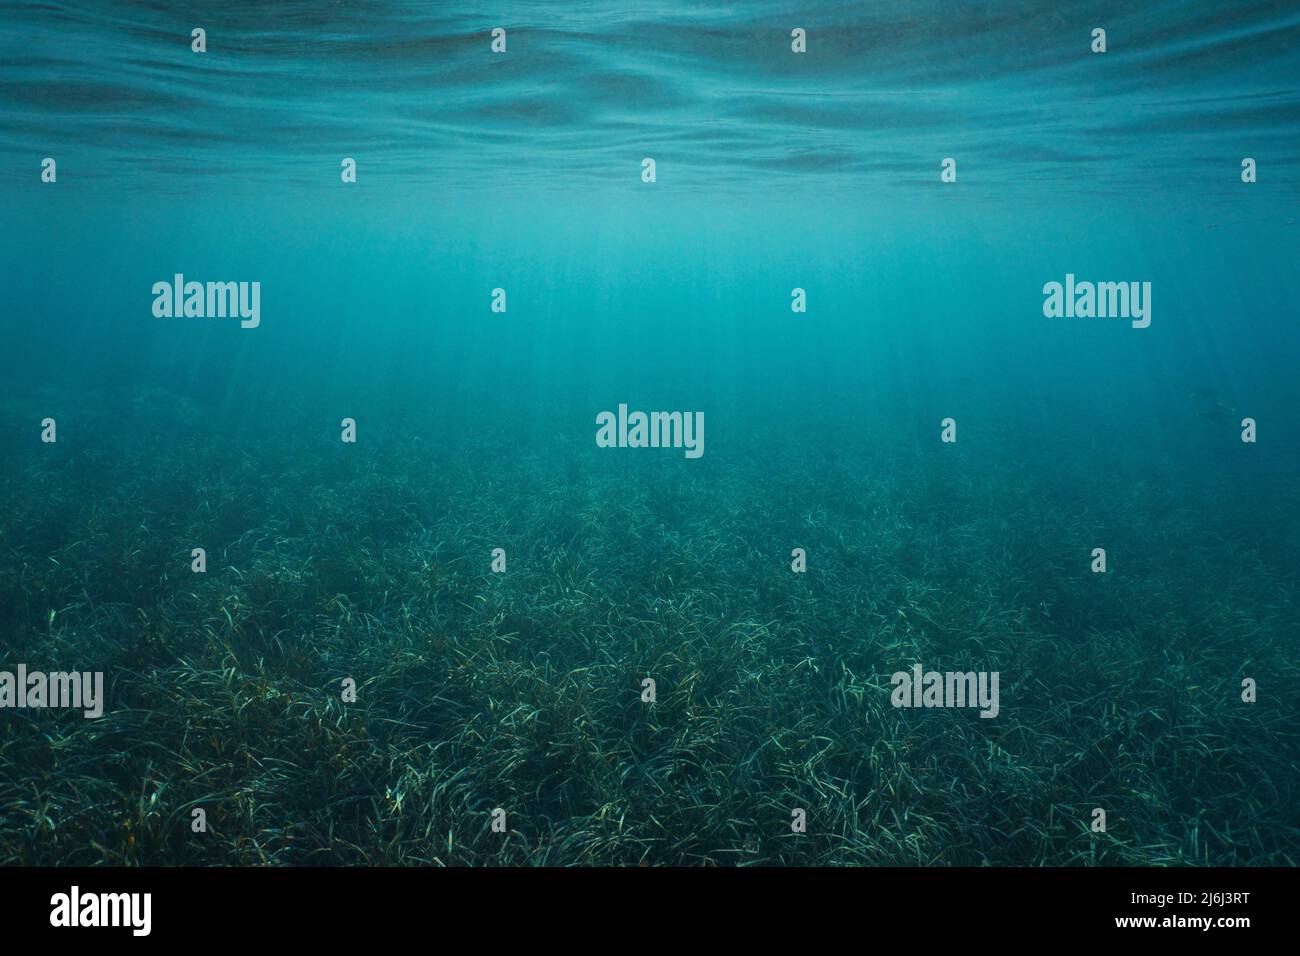 Fonds marins herbeux et surface de l'eau sous l'eau (Posidonia oceanica seagrass), scène naturelle, mer Méditerranée Banque D'Images